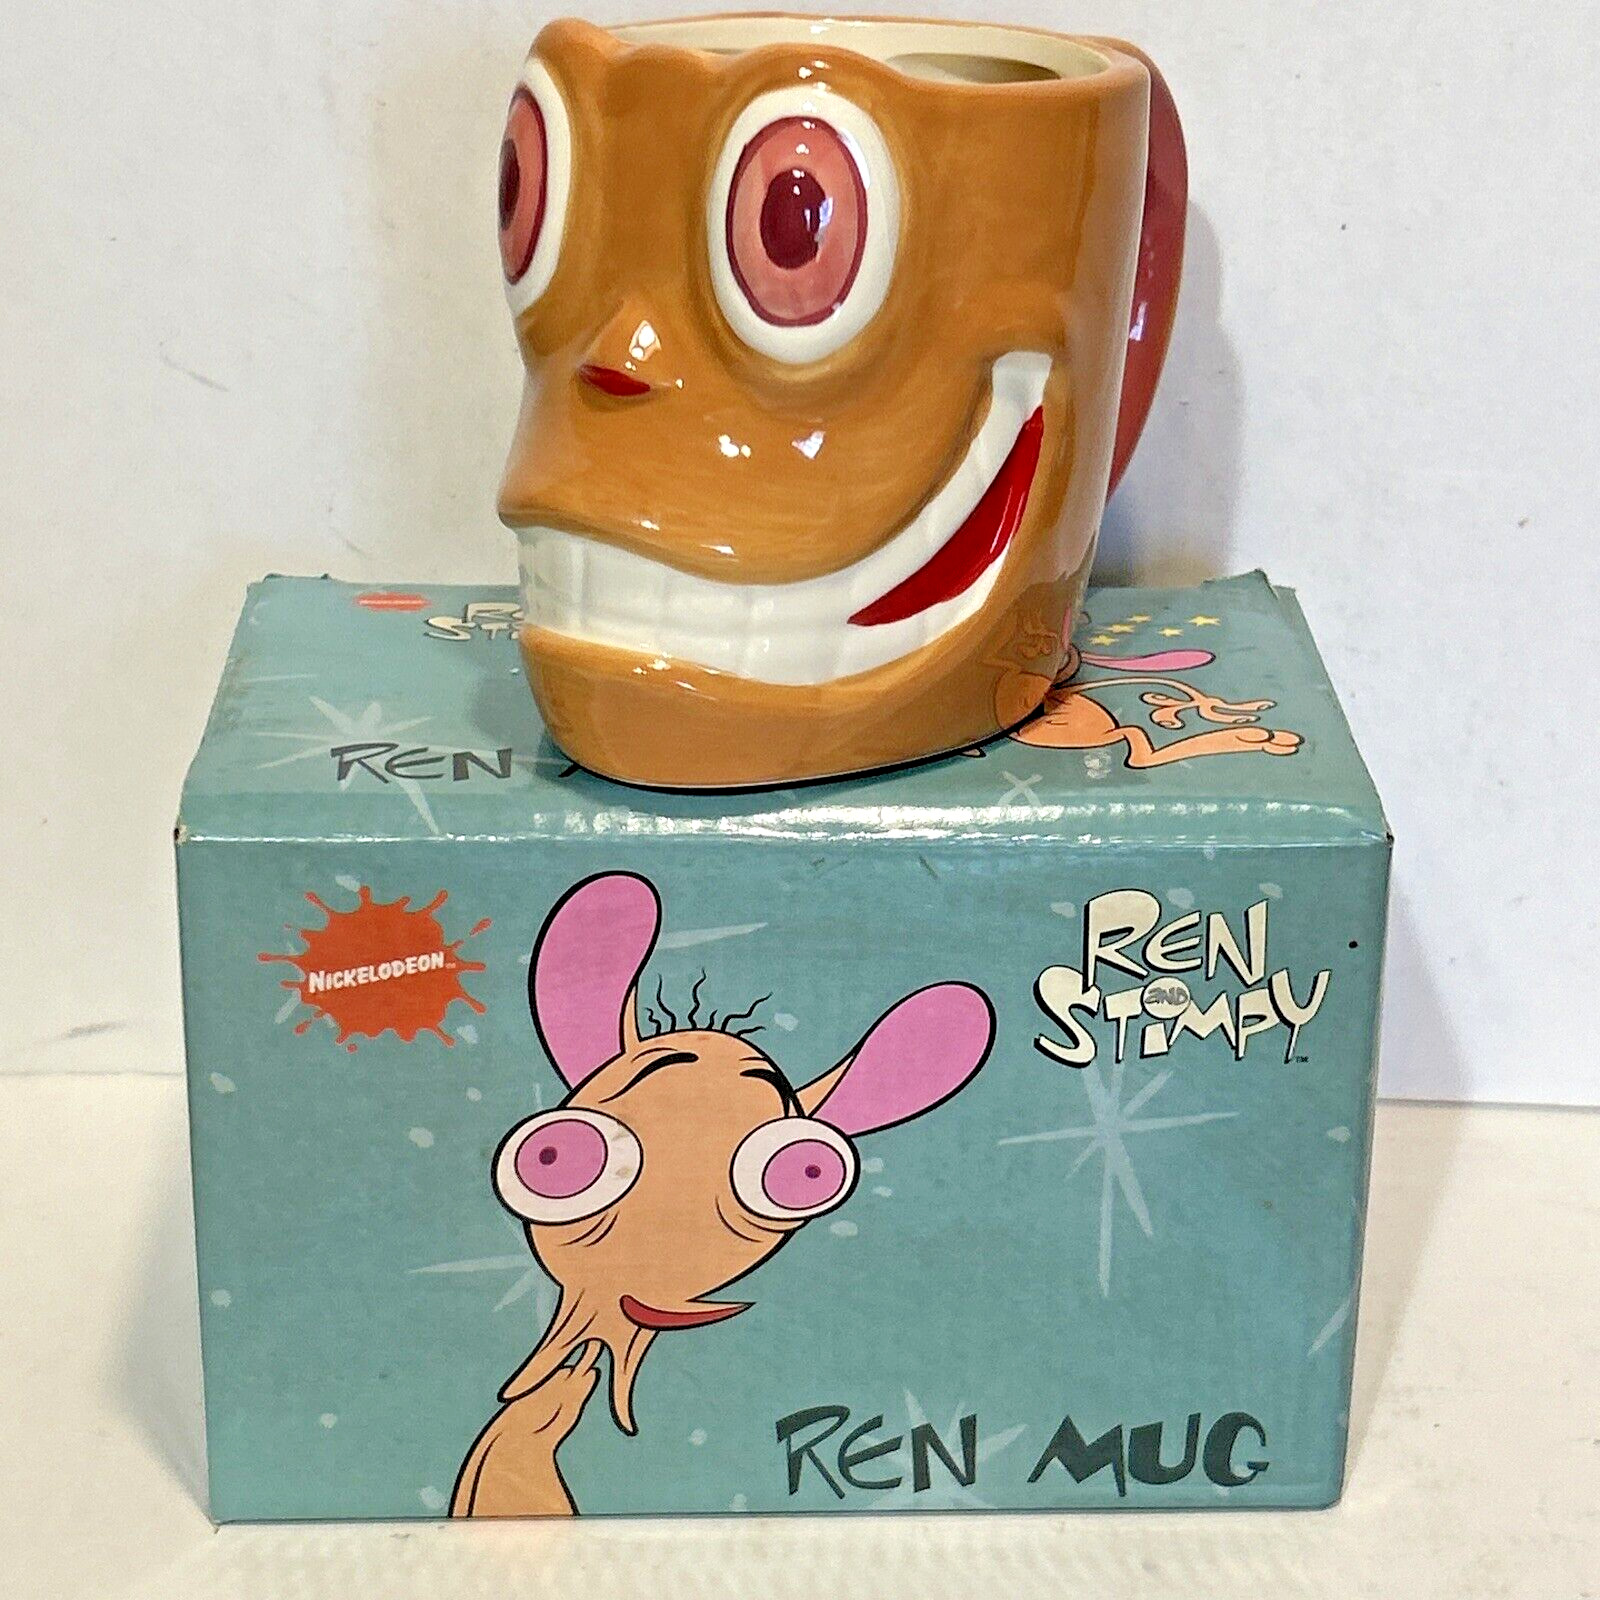 Nickelodeon 2017 Nick Box Ren and Stimpy Ceramic Mug REN